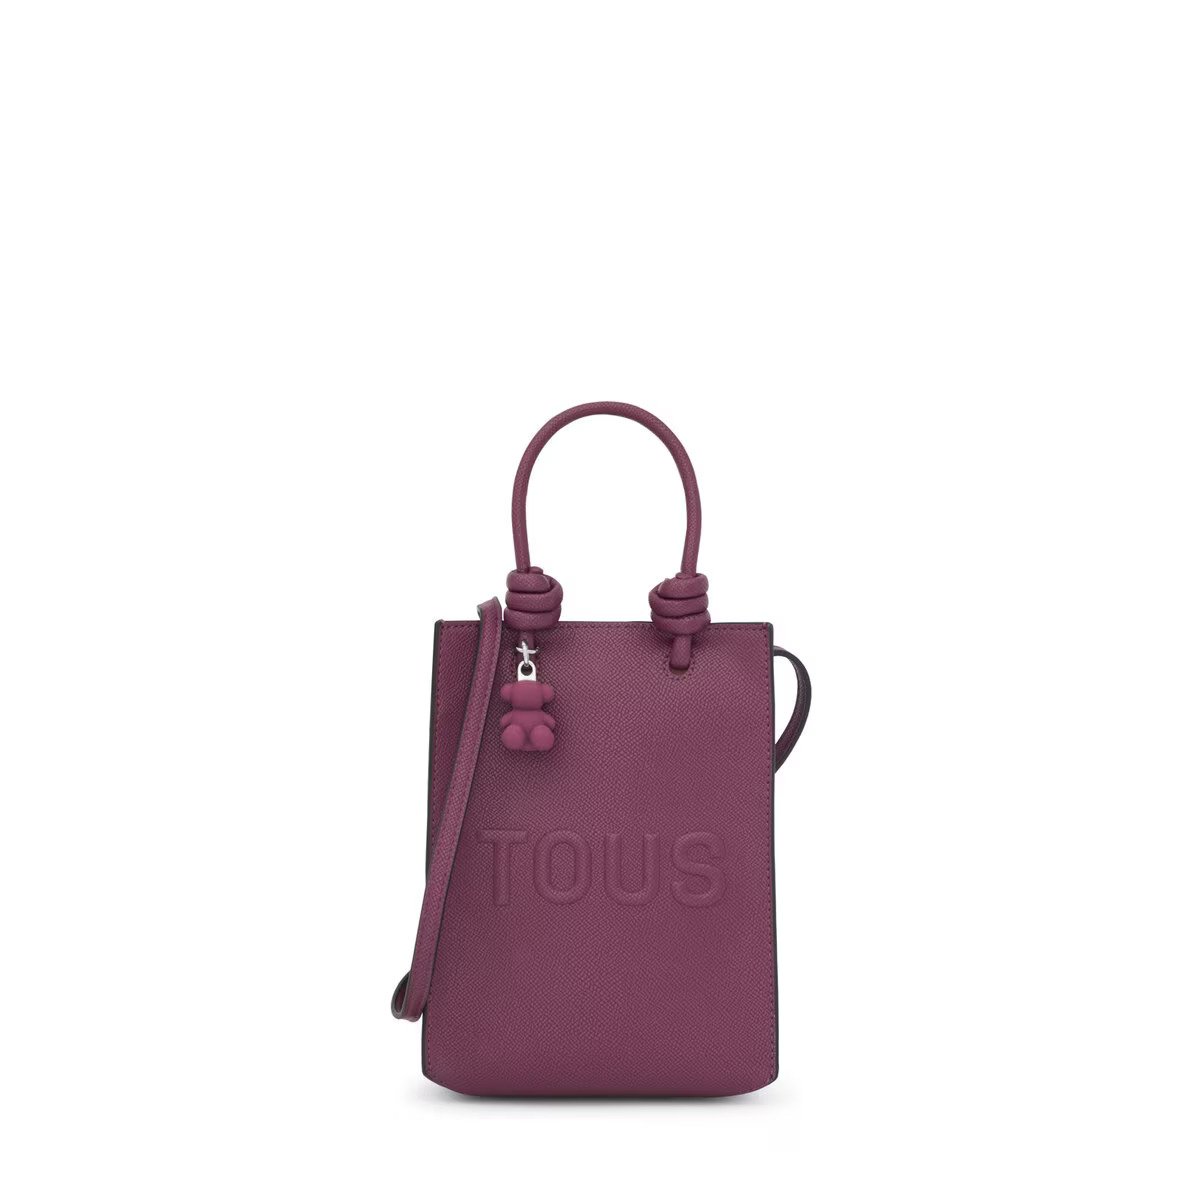 Pop TOUS La Rue New mini bag in burgundy color - per tutti